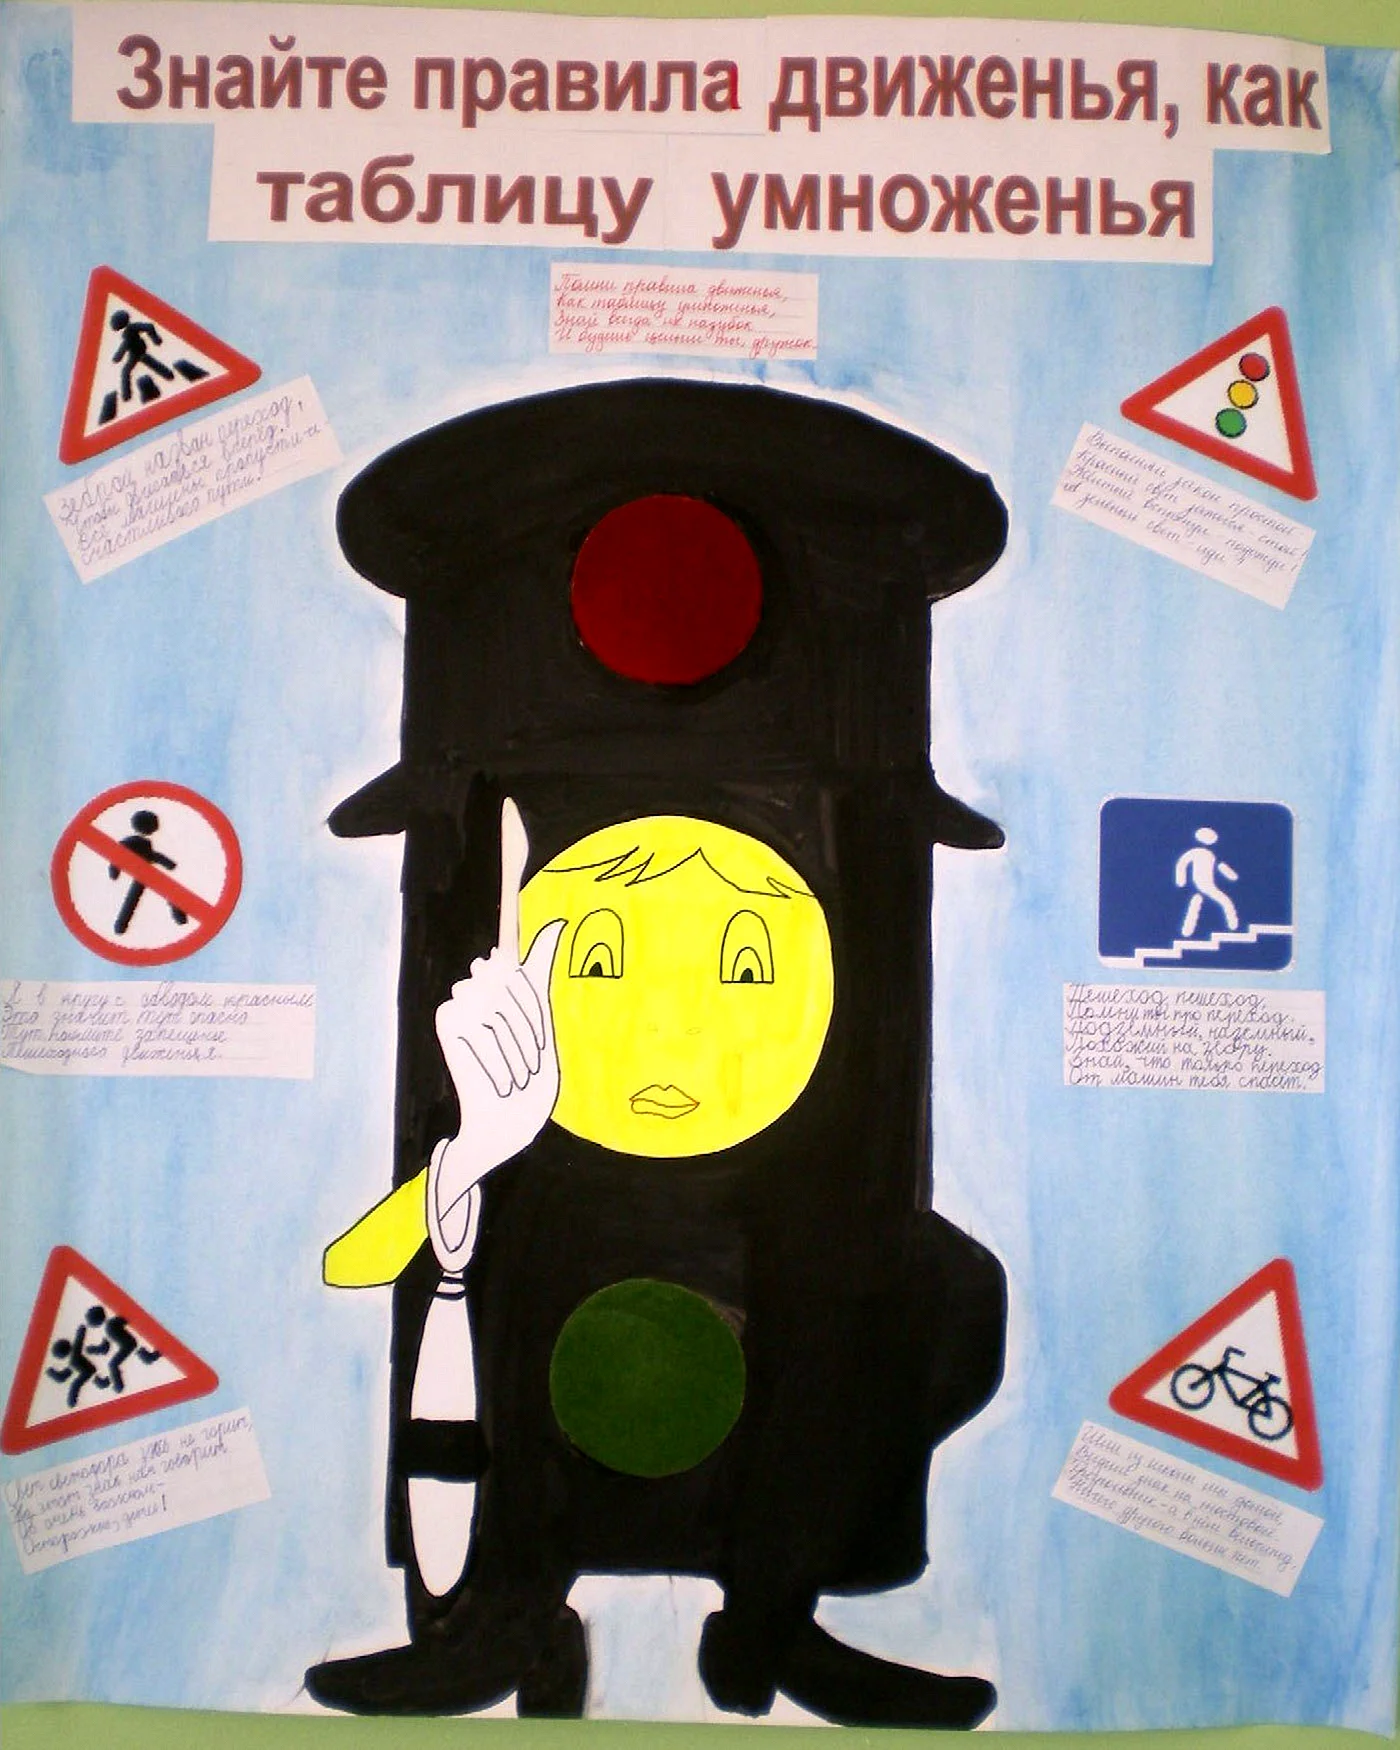 Плакат соблюдение правил. Плакат поправиламдорожногодвижентя. Плакат правила дорожного движения. Плакат на тему дорожное движение. Плакат на тему безопасность дорожного движения.